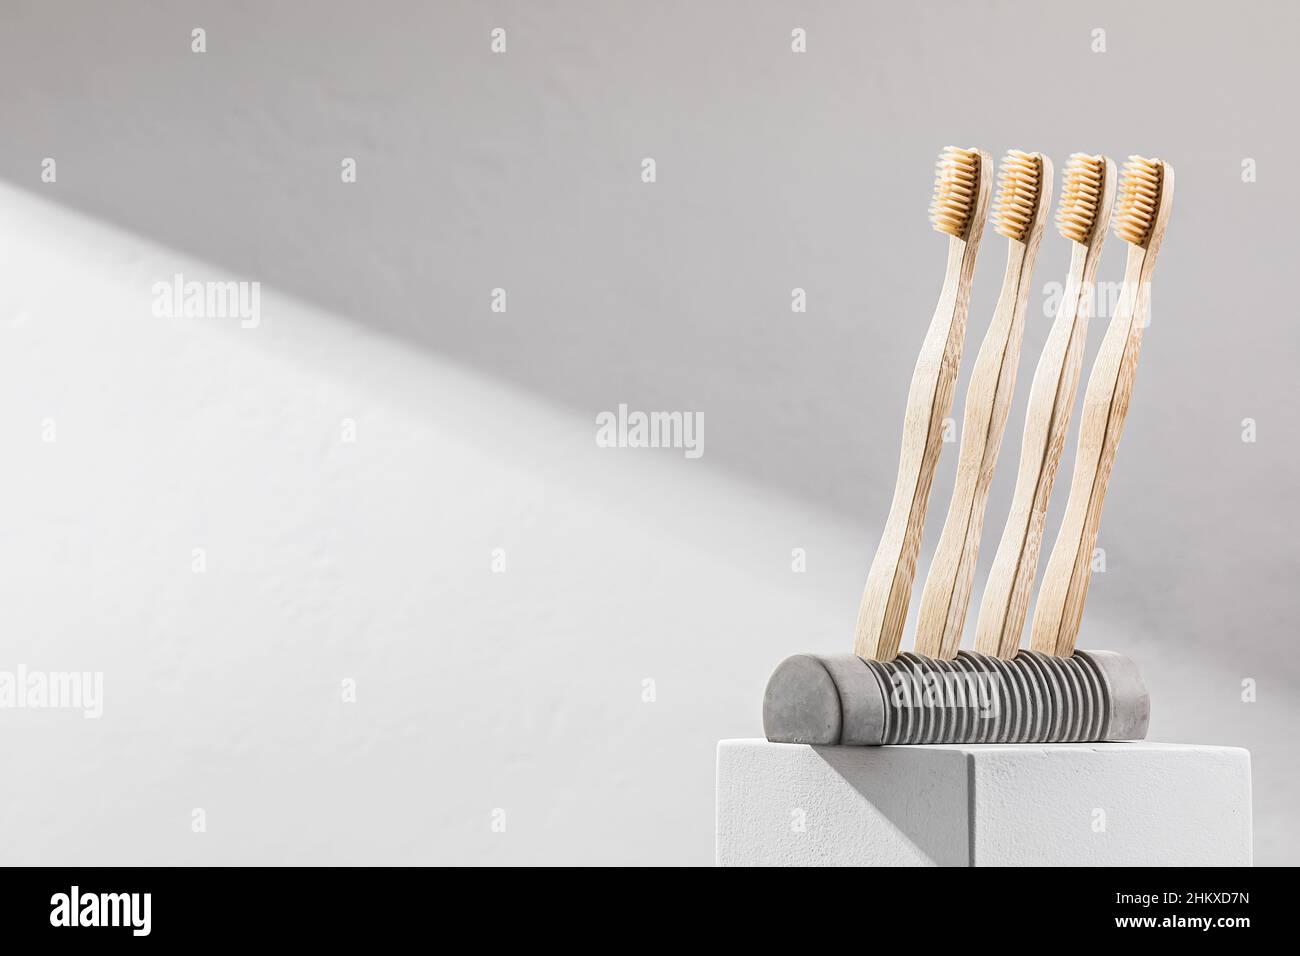 Brosses à dents en bois sur un support en béton. Concept écologique Banque D'Images